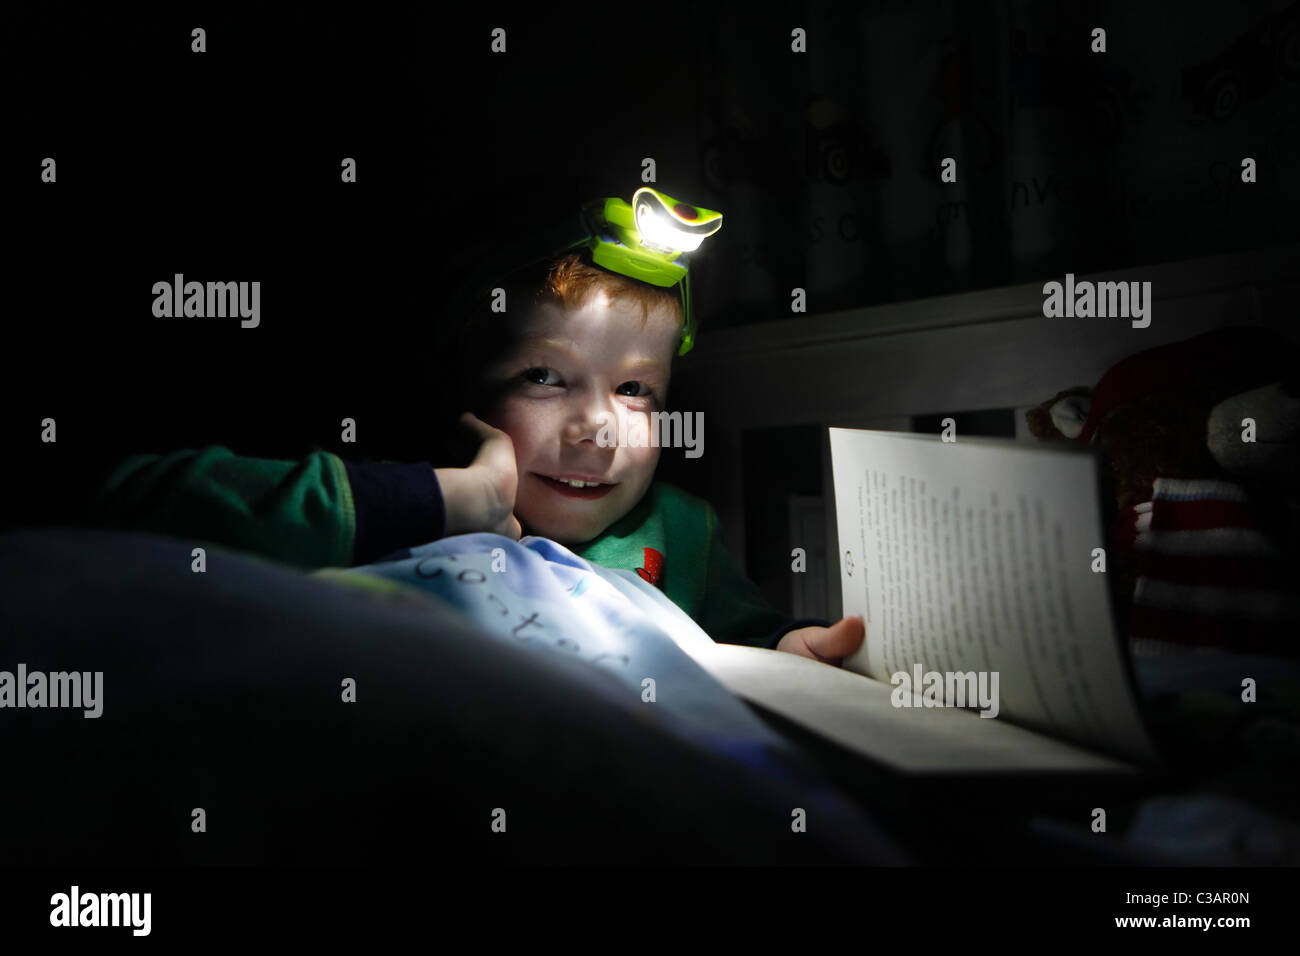 Lampada da lettura immagini e fotografie stock ad alta risoluzione - Alamy